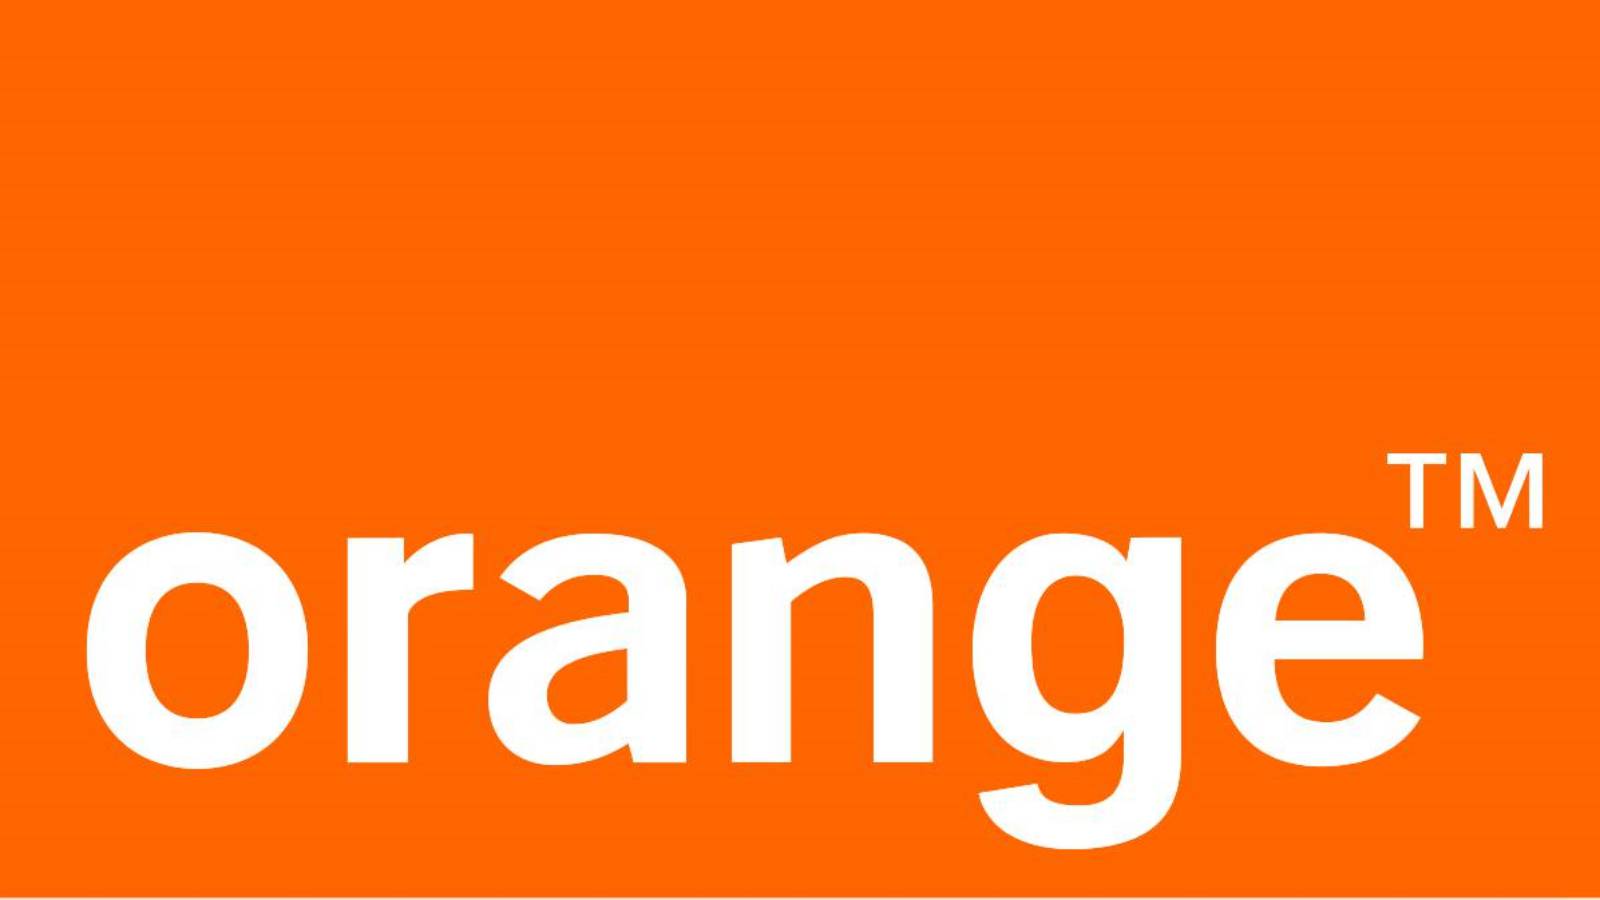 Orange Notifica Romani GRATUIT Chiar Acum Cum Poti Profita